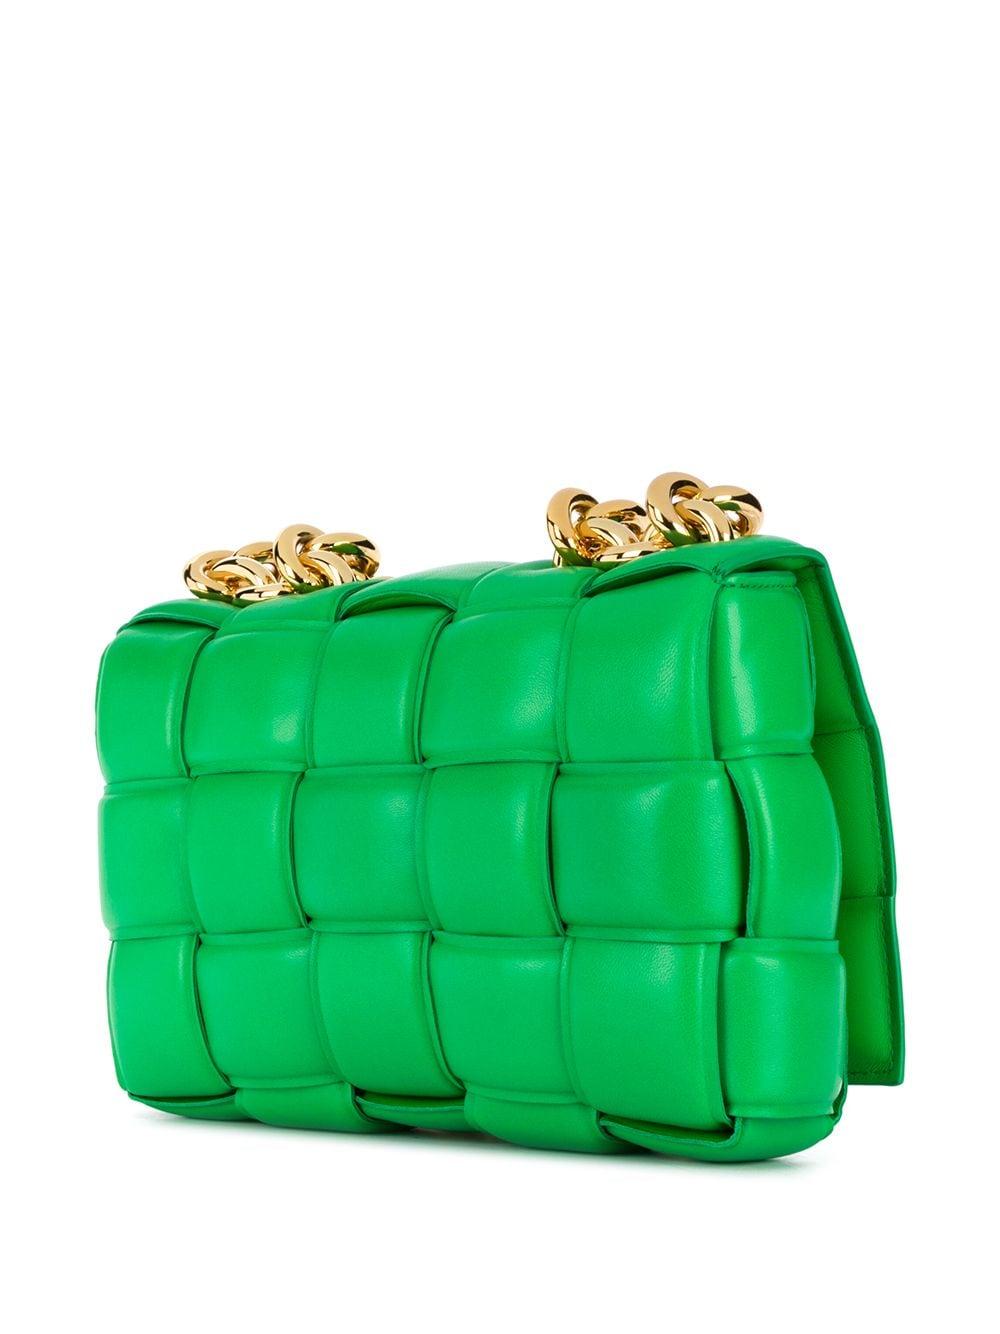 Bottega Veneta Leather Cassette Padded Shoulder Bag in Green - Lyst